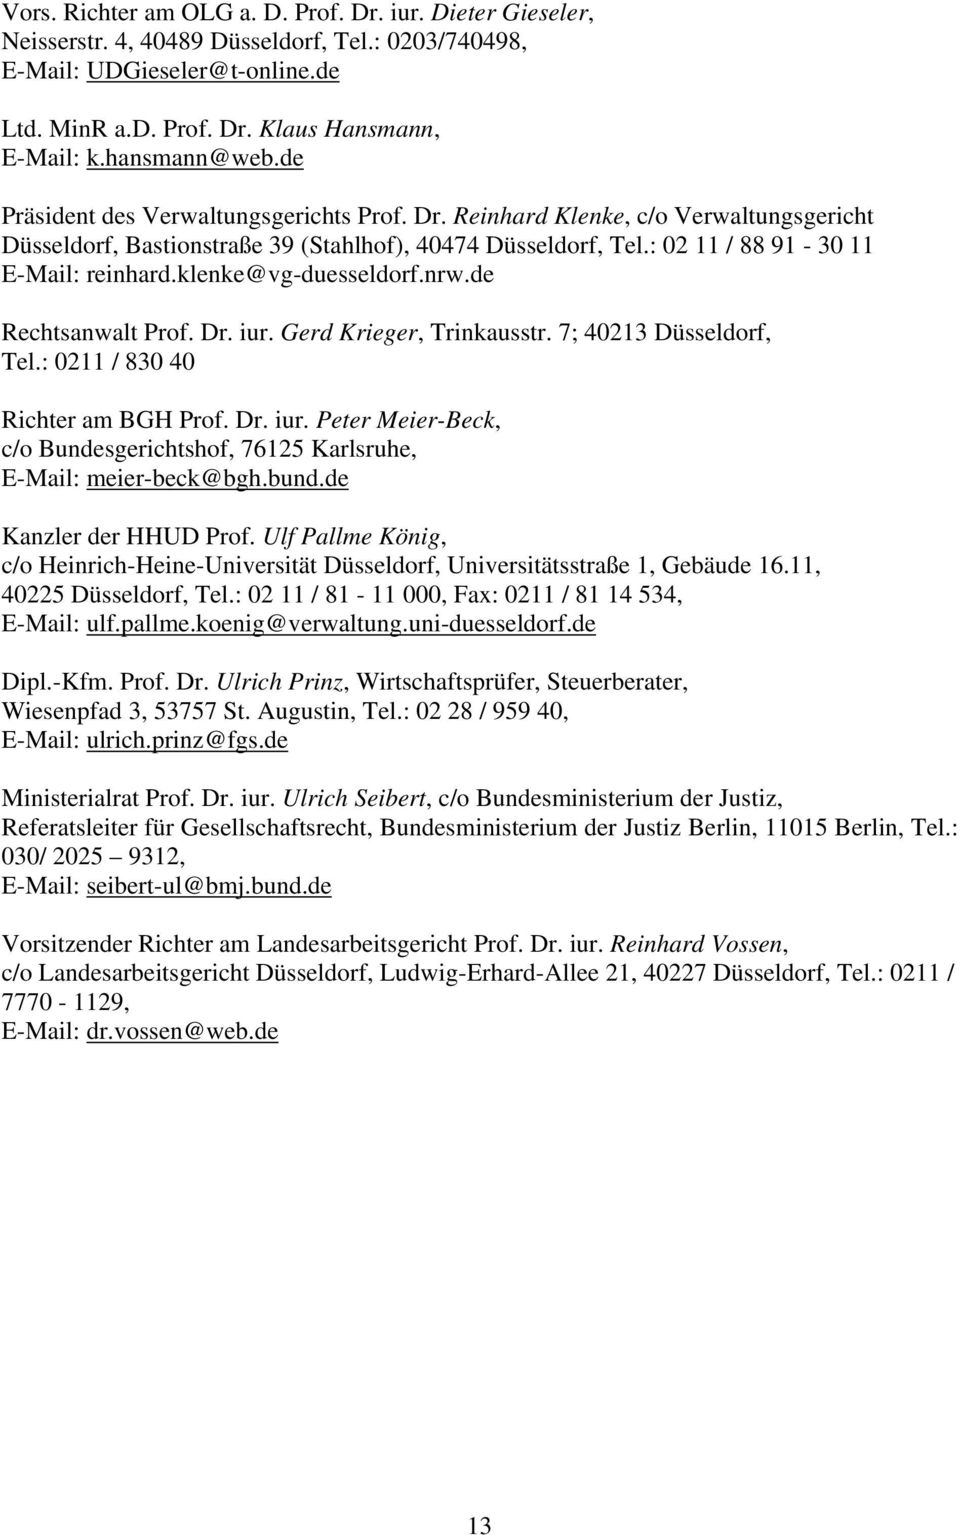 : 02 11 / 88 91-30 11 E-Mail: reinhard.klenke@vg-duesseldorf.nrw.de Rechtsanwalt Prof. Dr. iur. Gerd Krieger, Trinkausstr. 7; 40213 Düsseldorf, Tel.: 0211 / 830 40 Richter am BGH Prof. Dr. iur. Peter Meier-Beck, c/o Bundesgerichtshof, 76125 Karlsruhe, E-Mail: meier-beck@bgh.